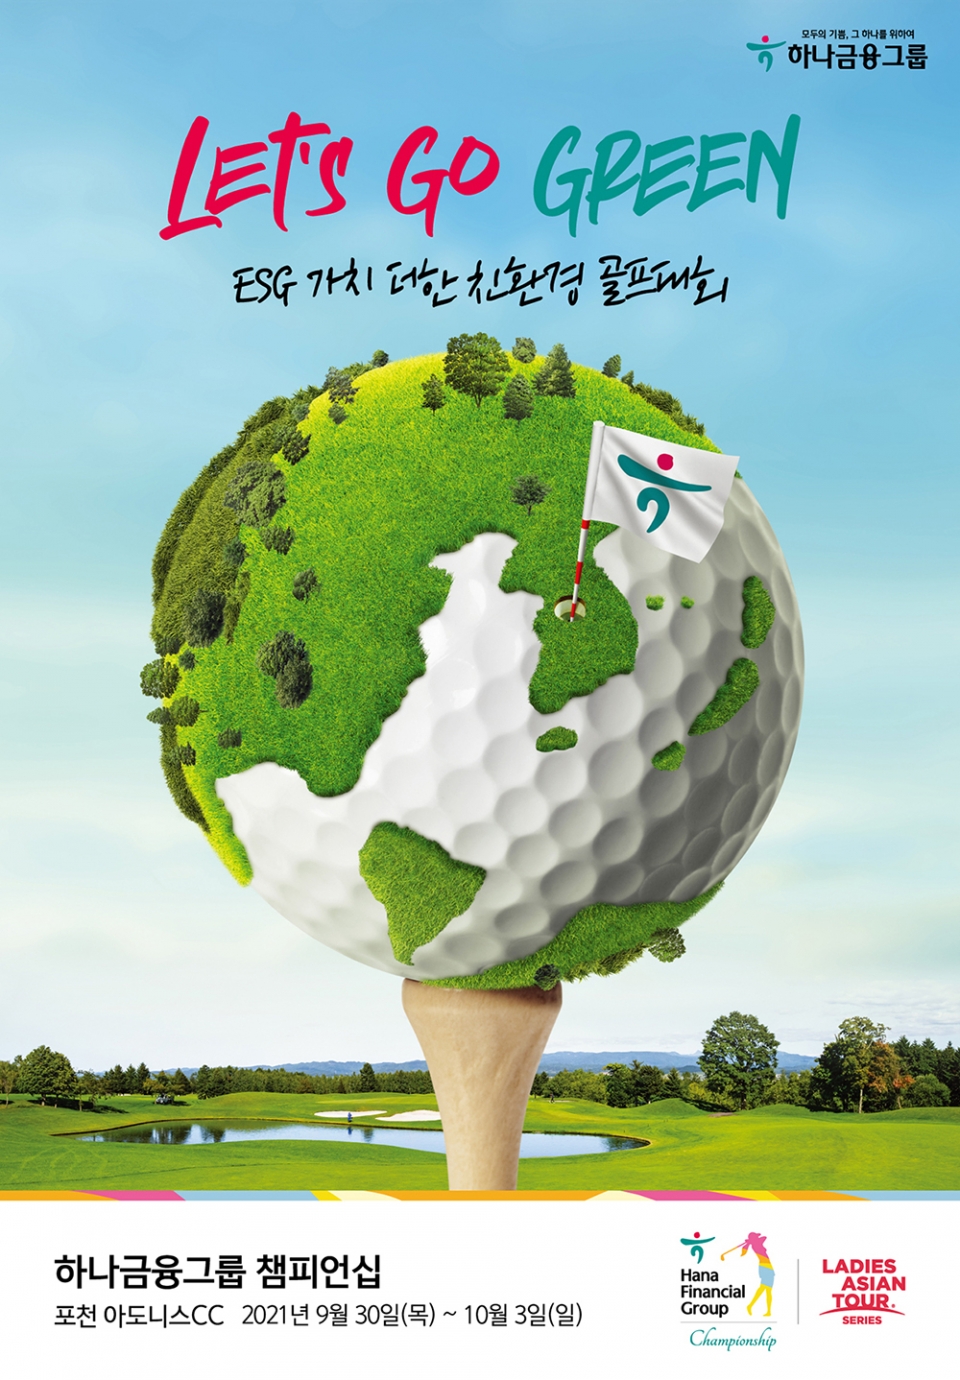 하나금융그룹 ESG 가치 더한 친환경 골프대회 하나금융그룹 챔피언십 개최